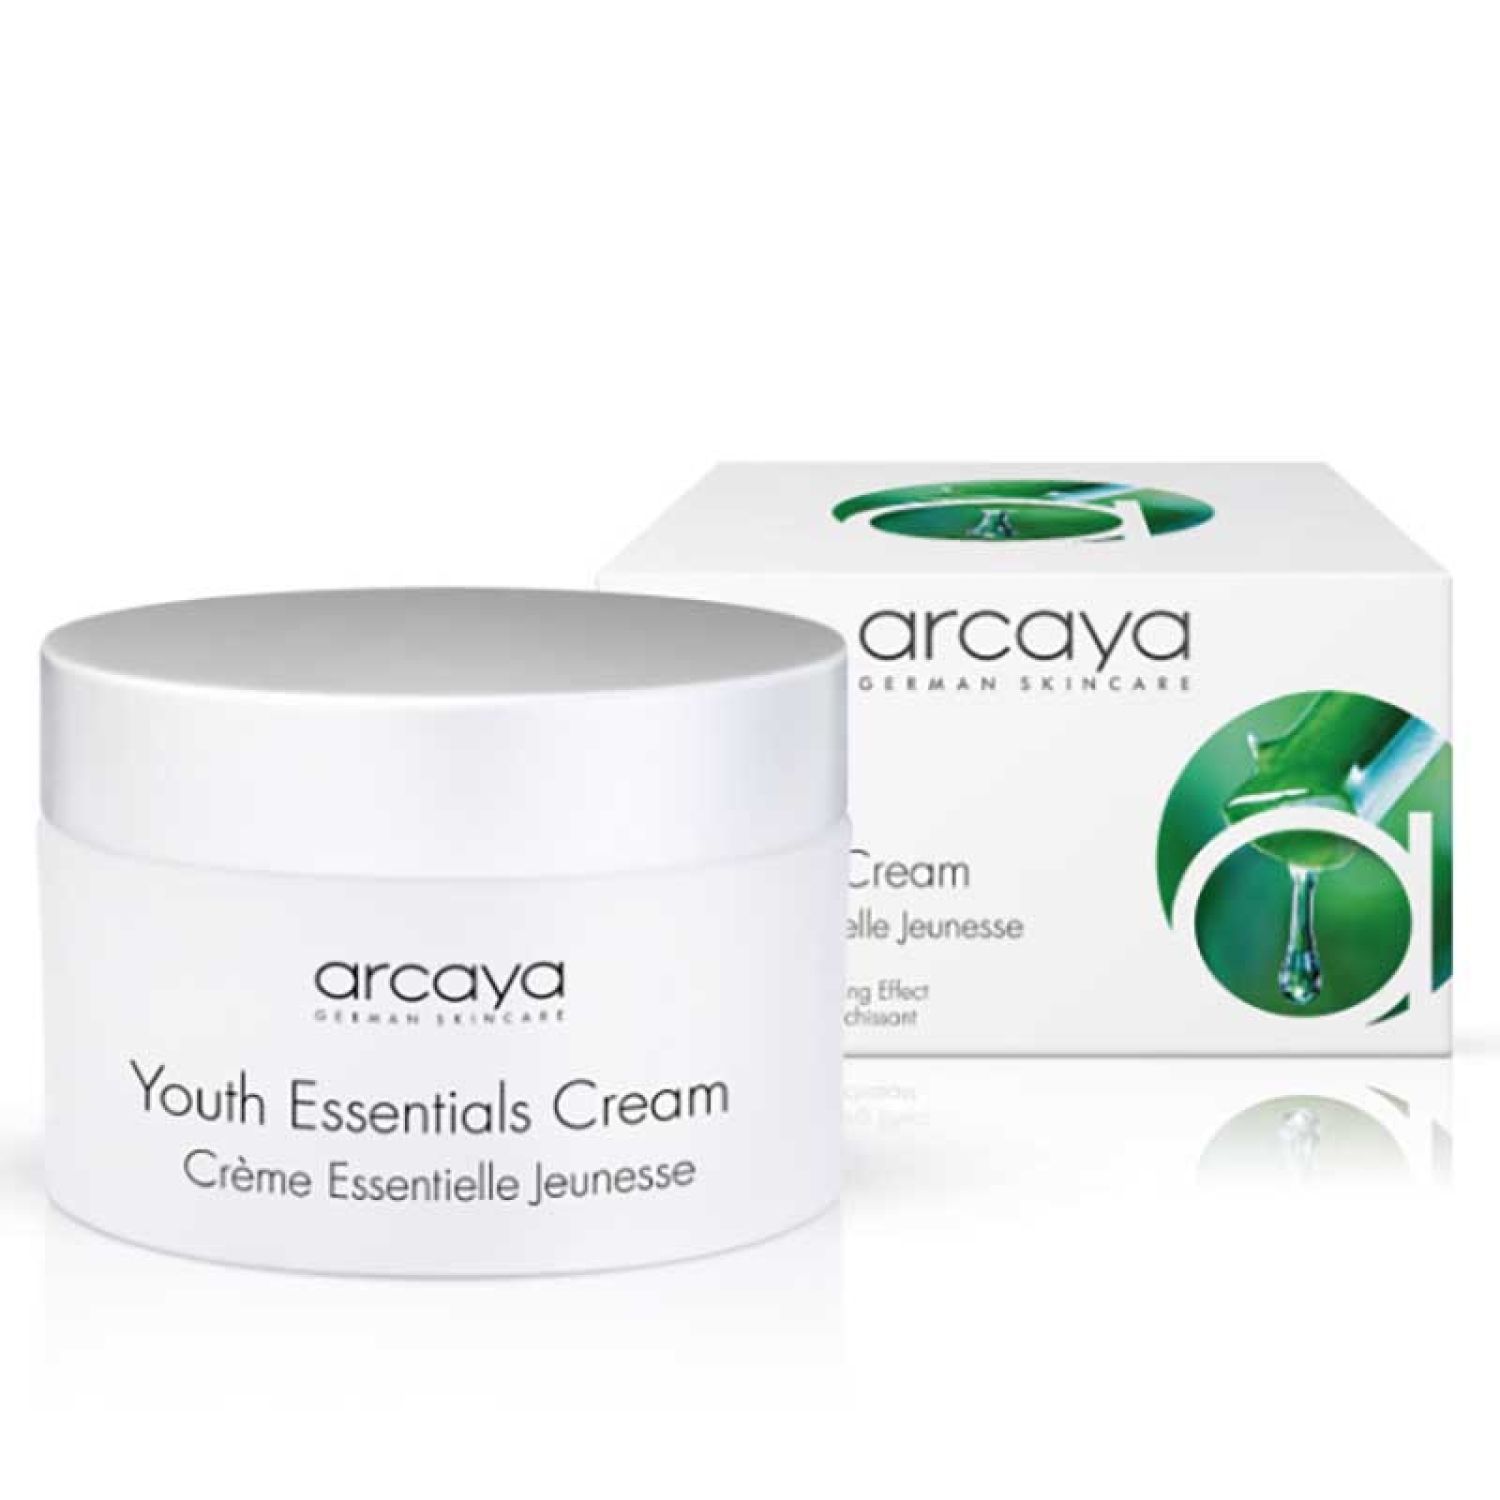 arcaya Creme Youth Essentials Cream